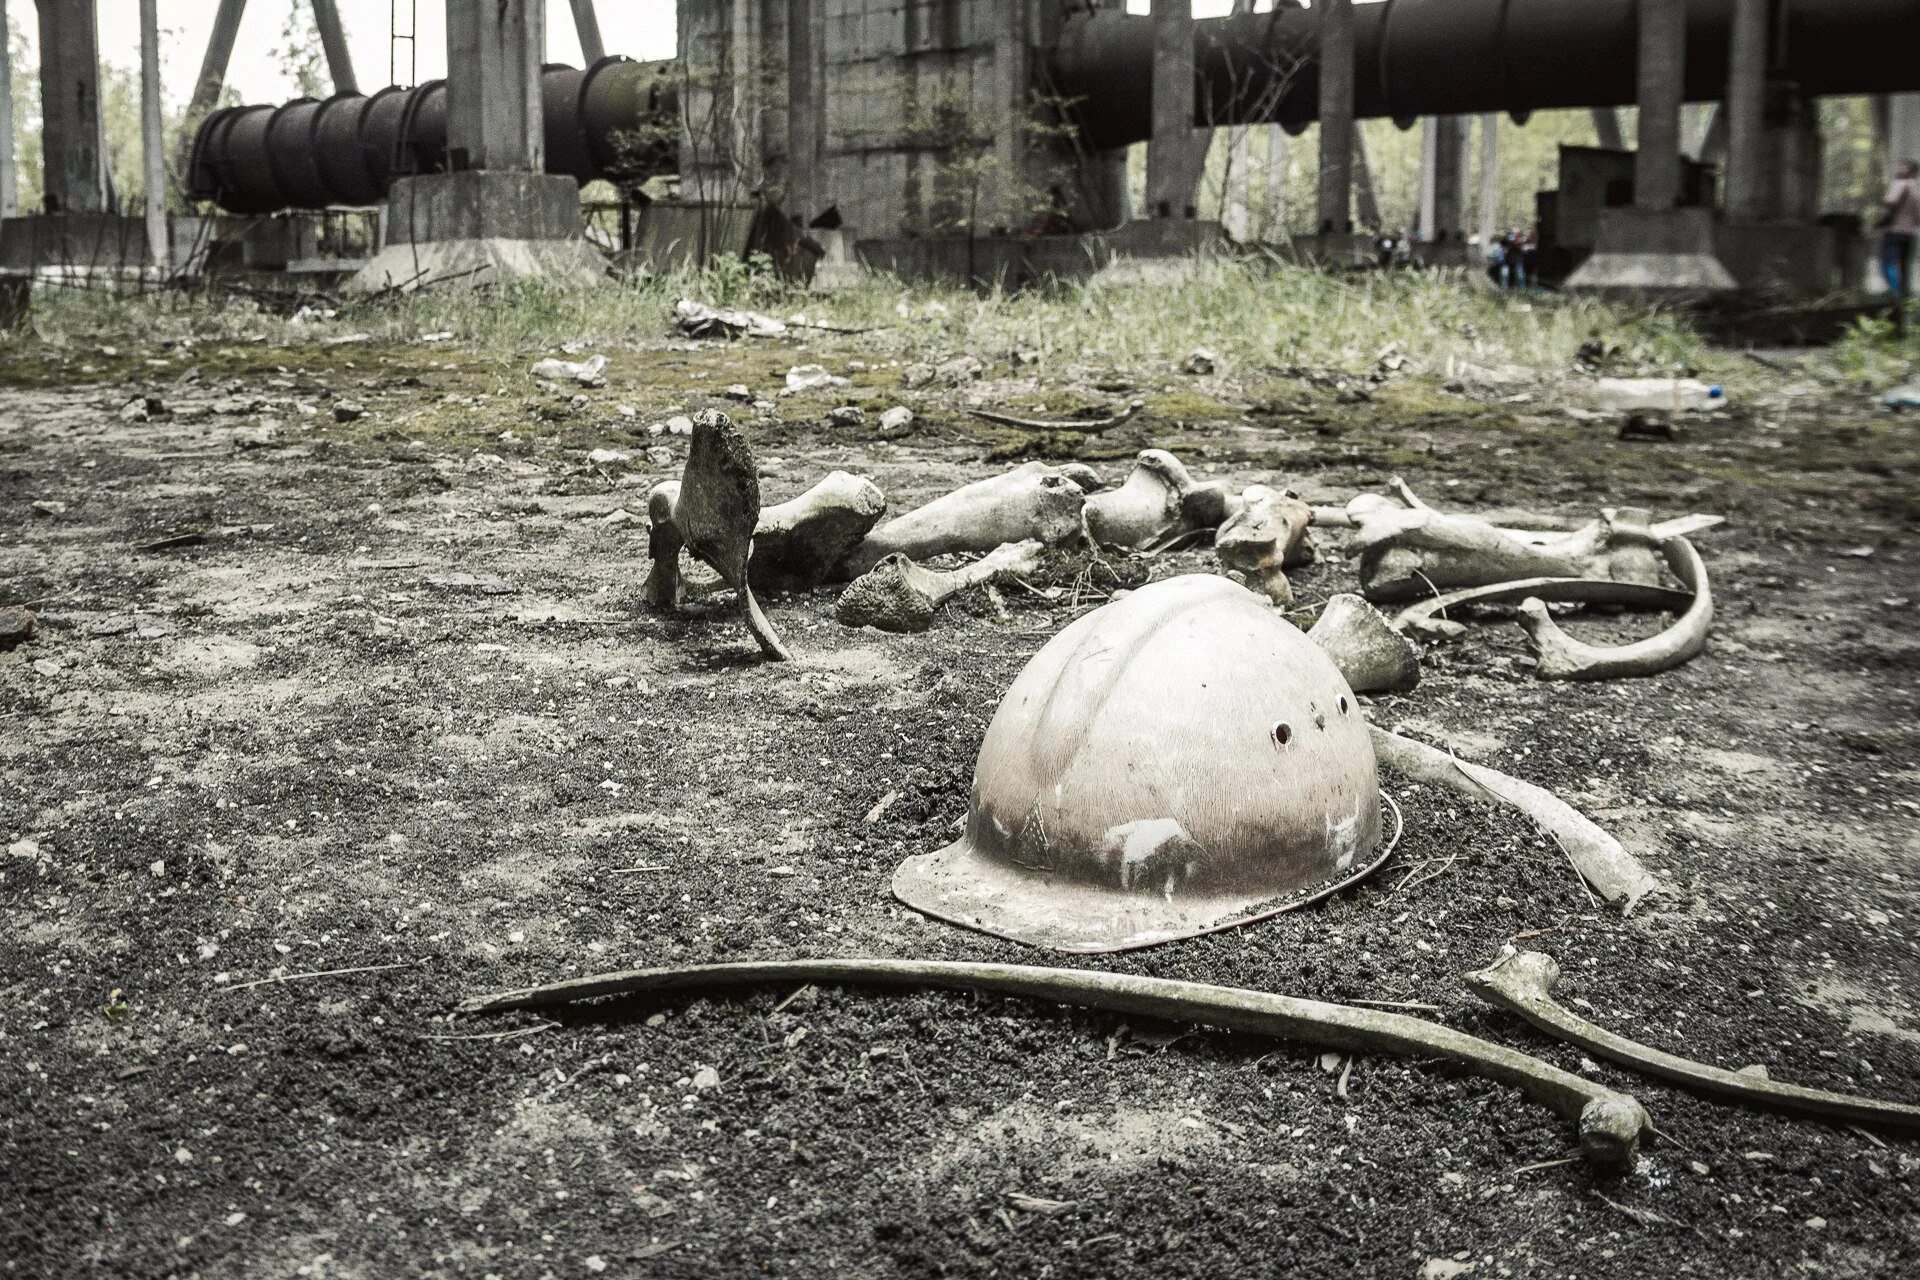 Chernobyl nuclear. Чернобыль взрыв. Припять авария на Чернобыльской АЭС. Чернобыль катастрофа. Чернобыль реактор.